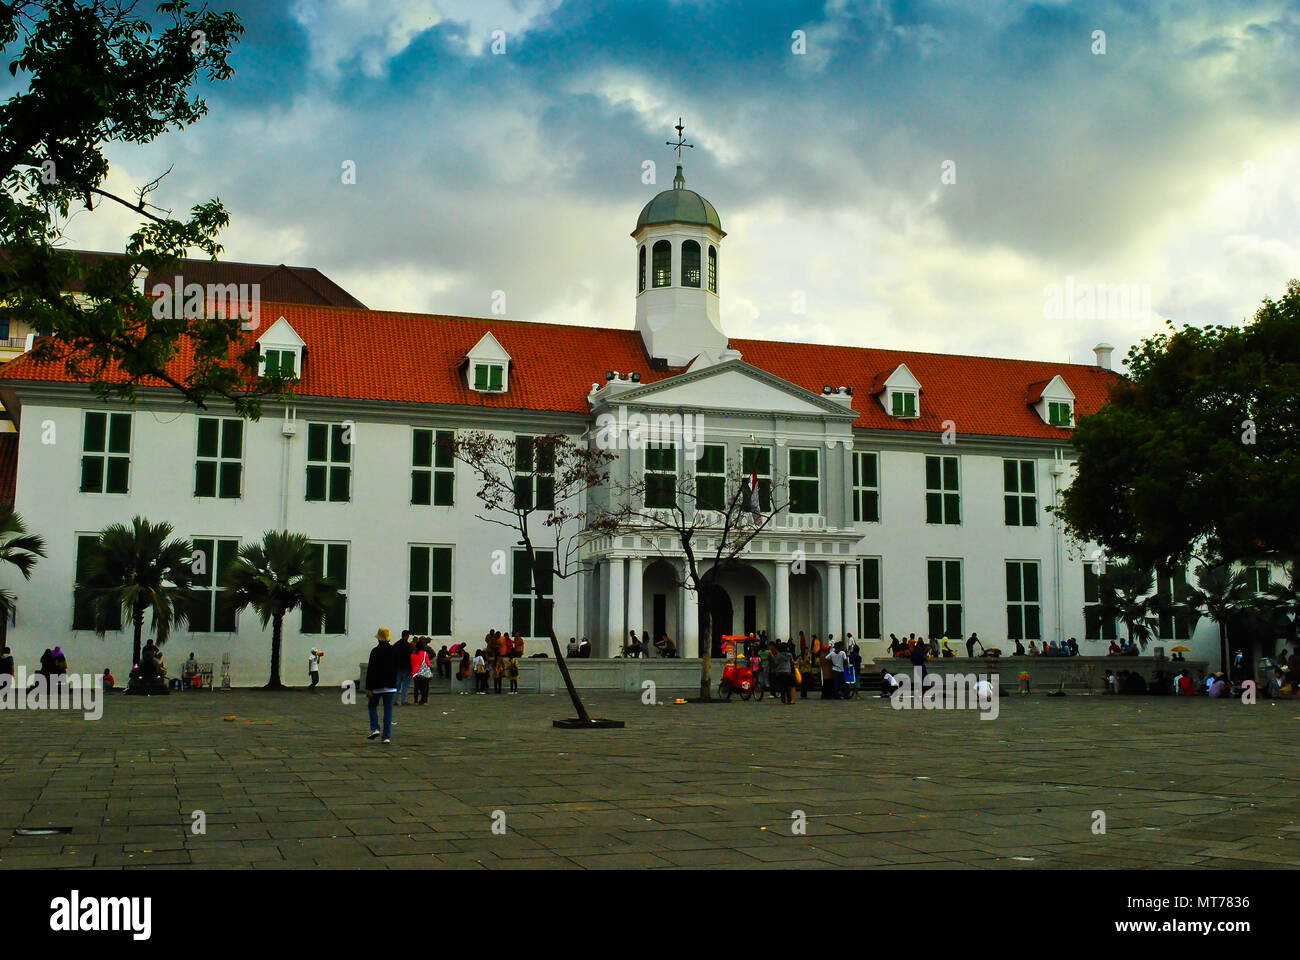 L'ancien édifice de l'hôtel de ville coloniale historique de néerlandais à l'ère européenne dans la vieille ville de Jakarta, Indonésie Banque D'Images